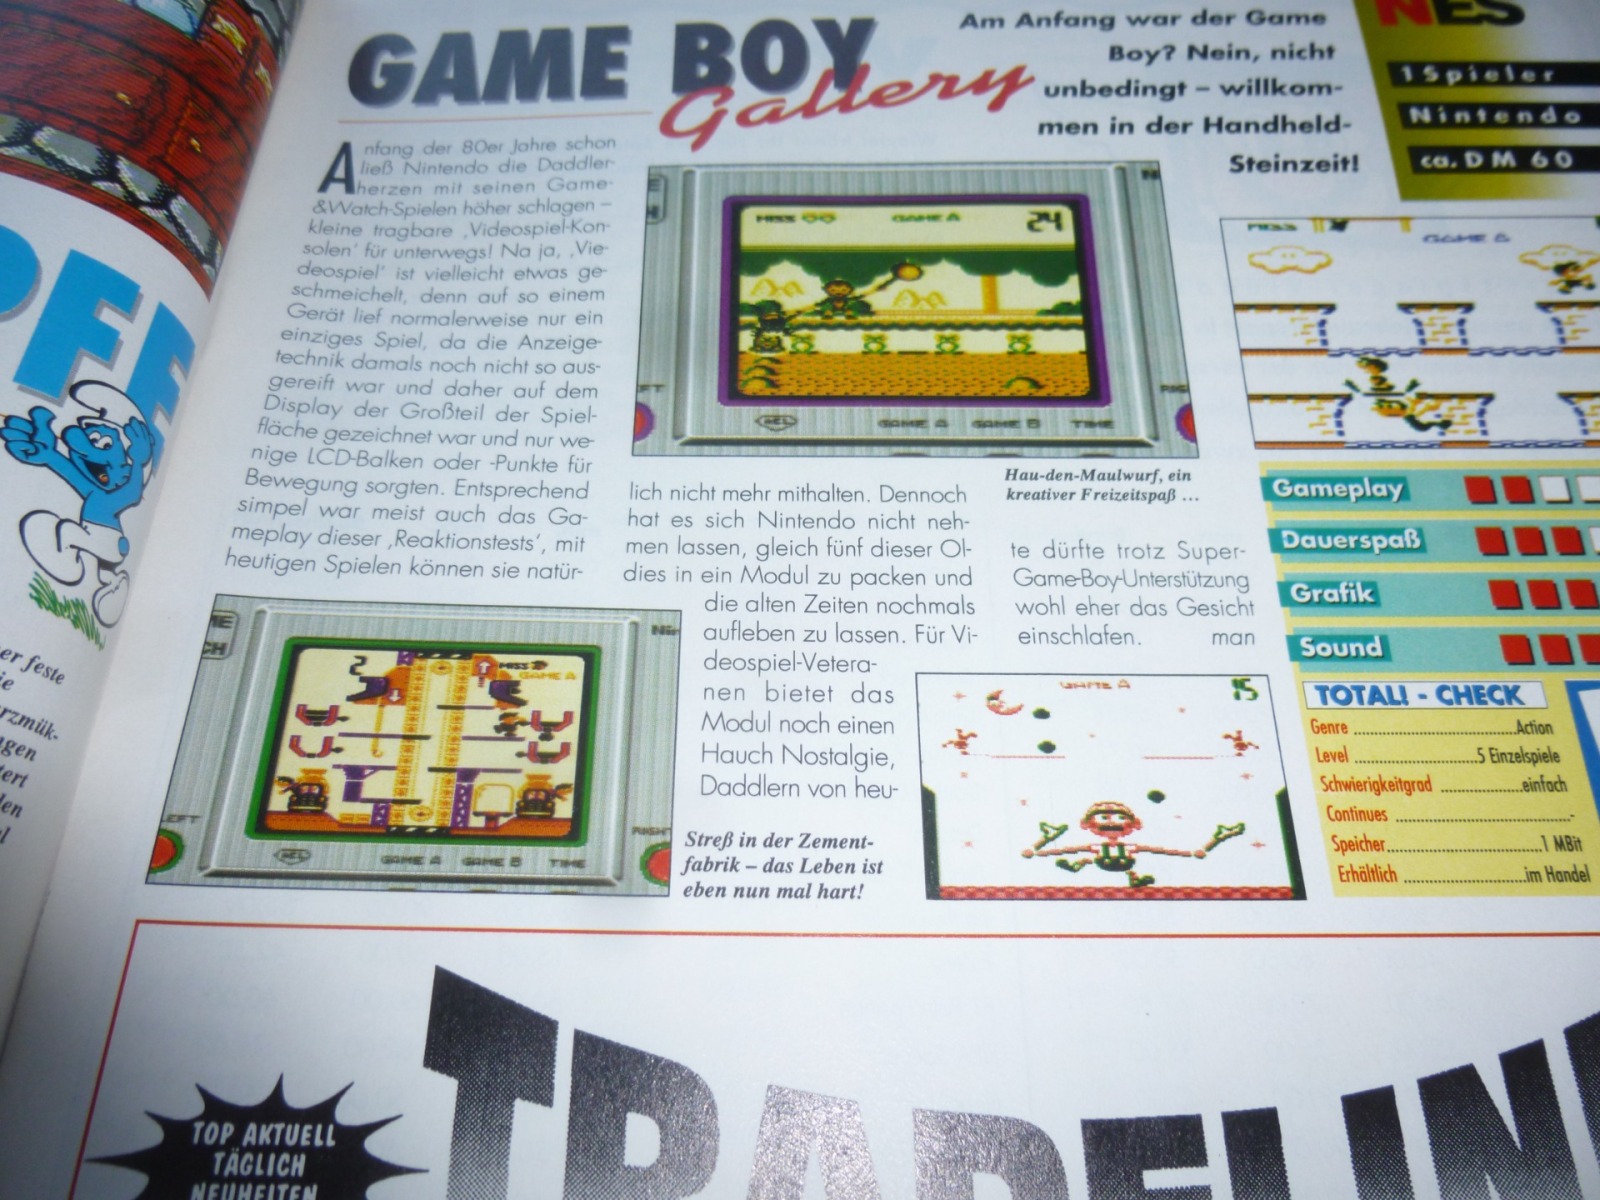 TOTAL Das unabhängige Magazin - 100% Nintendo - Ausgabe 5/95 1995 13